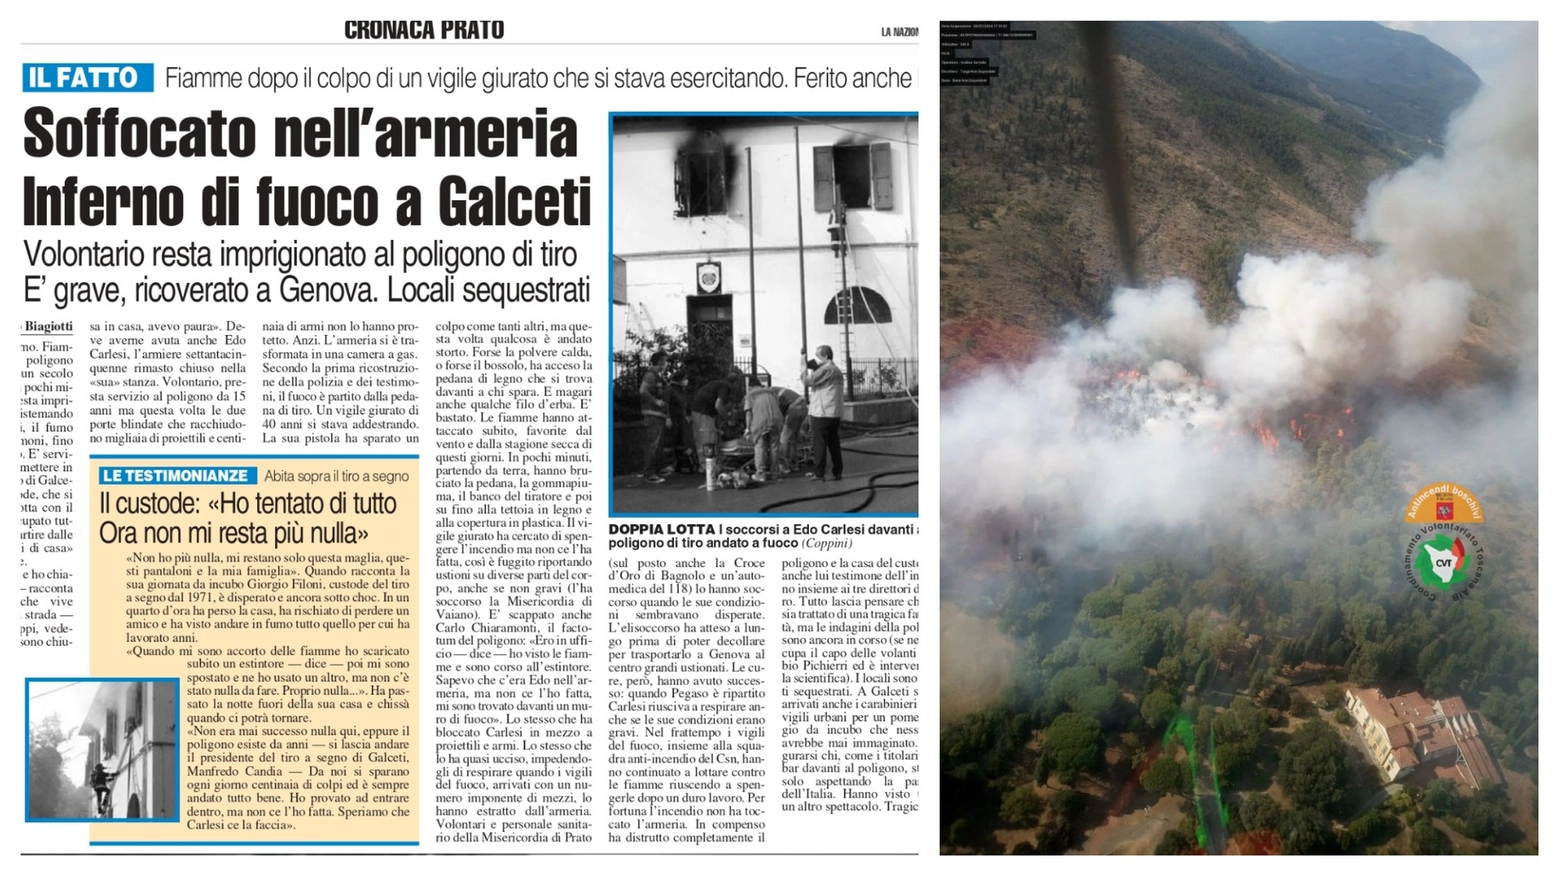 A sinistra la pagina de La Nazione del luglio 2006; a destra l'incendio a Galceti visto dall'alto